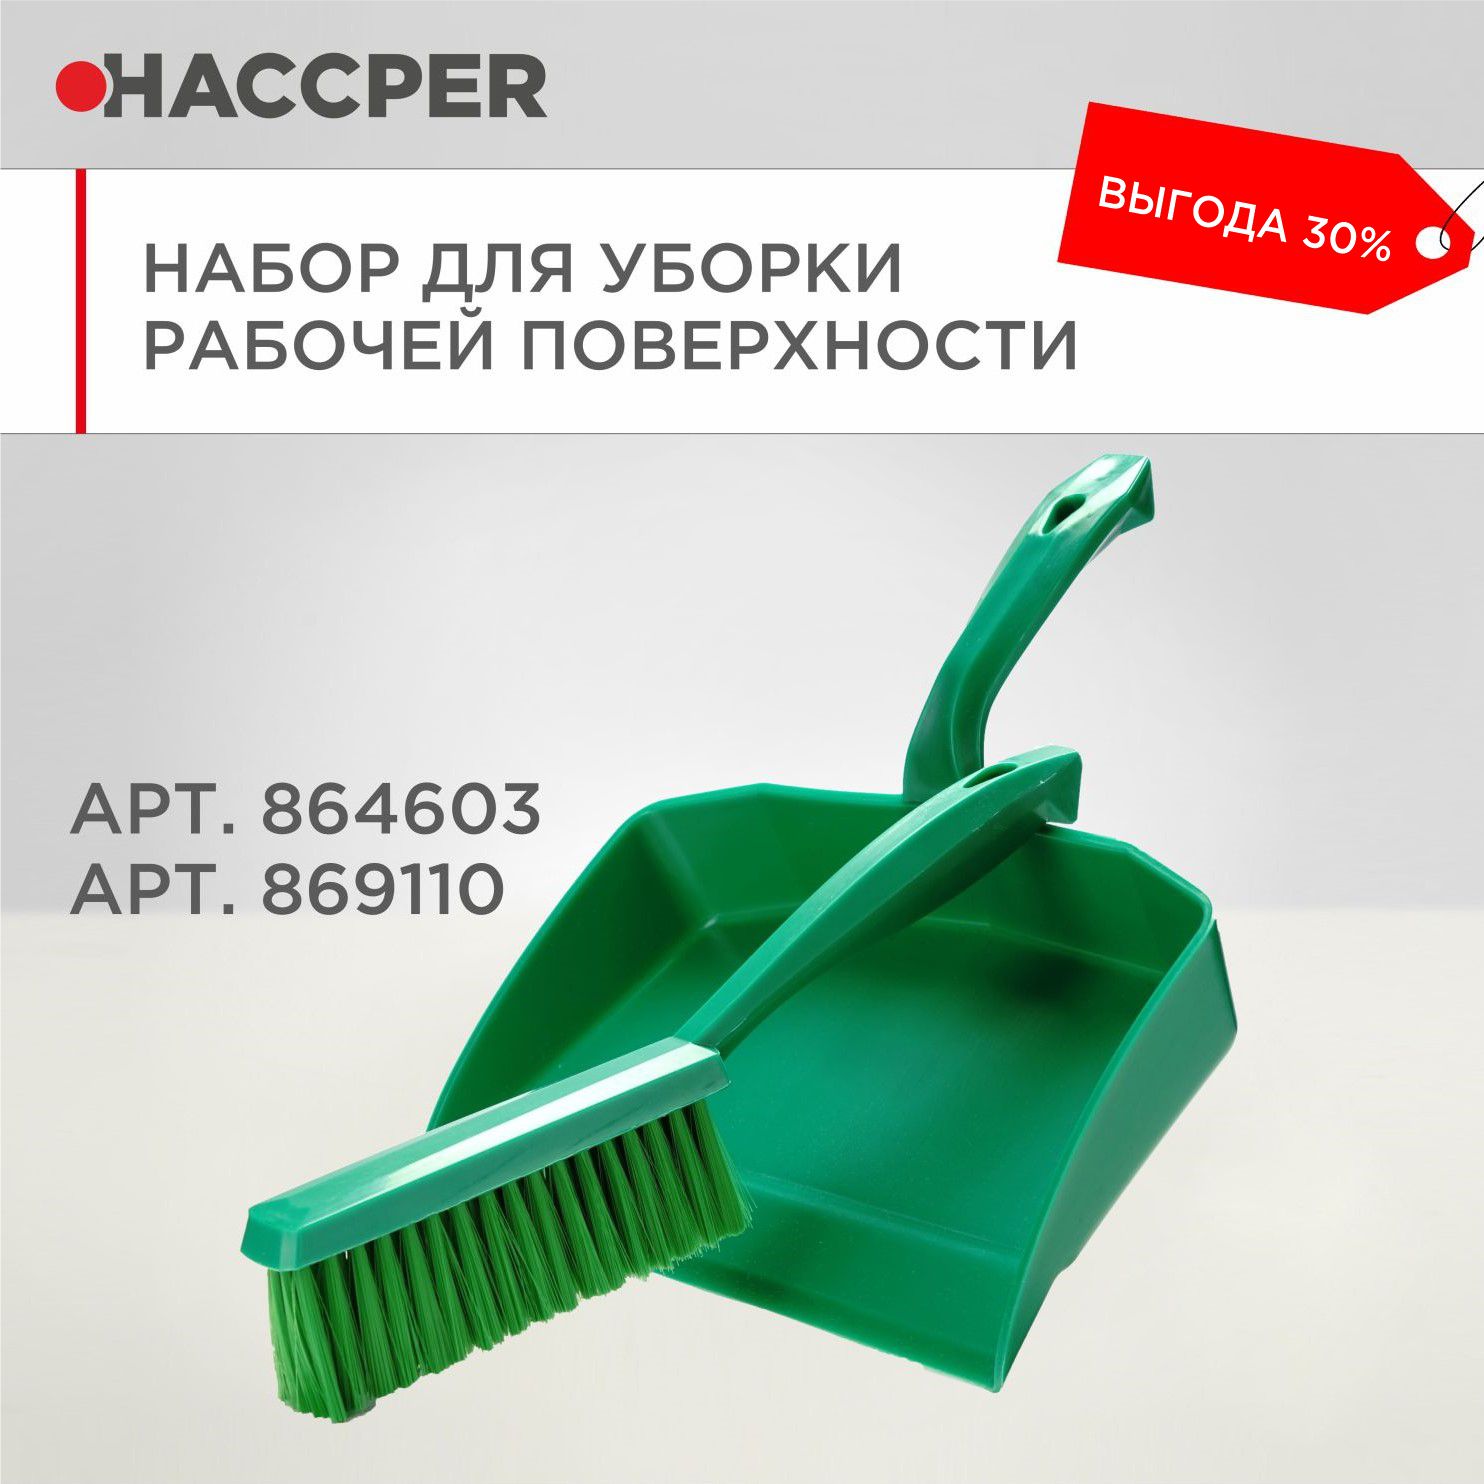 Набор для уборки рабочих поверхностей HACCPER, зеленый